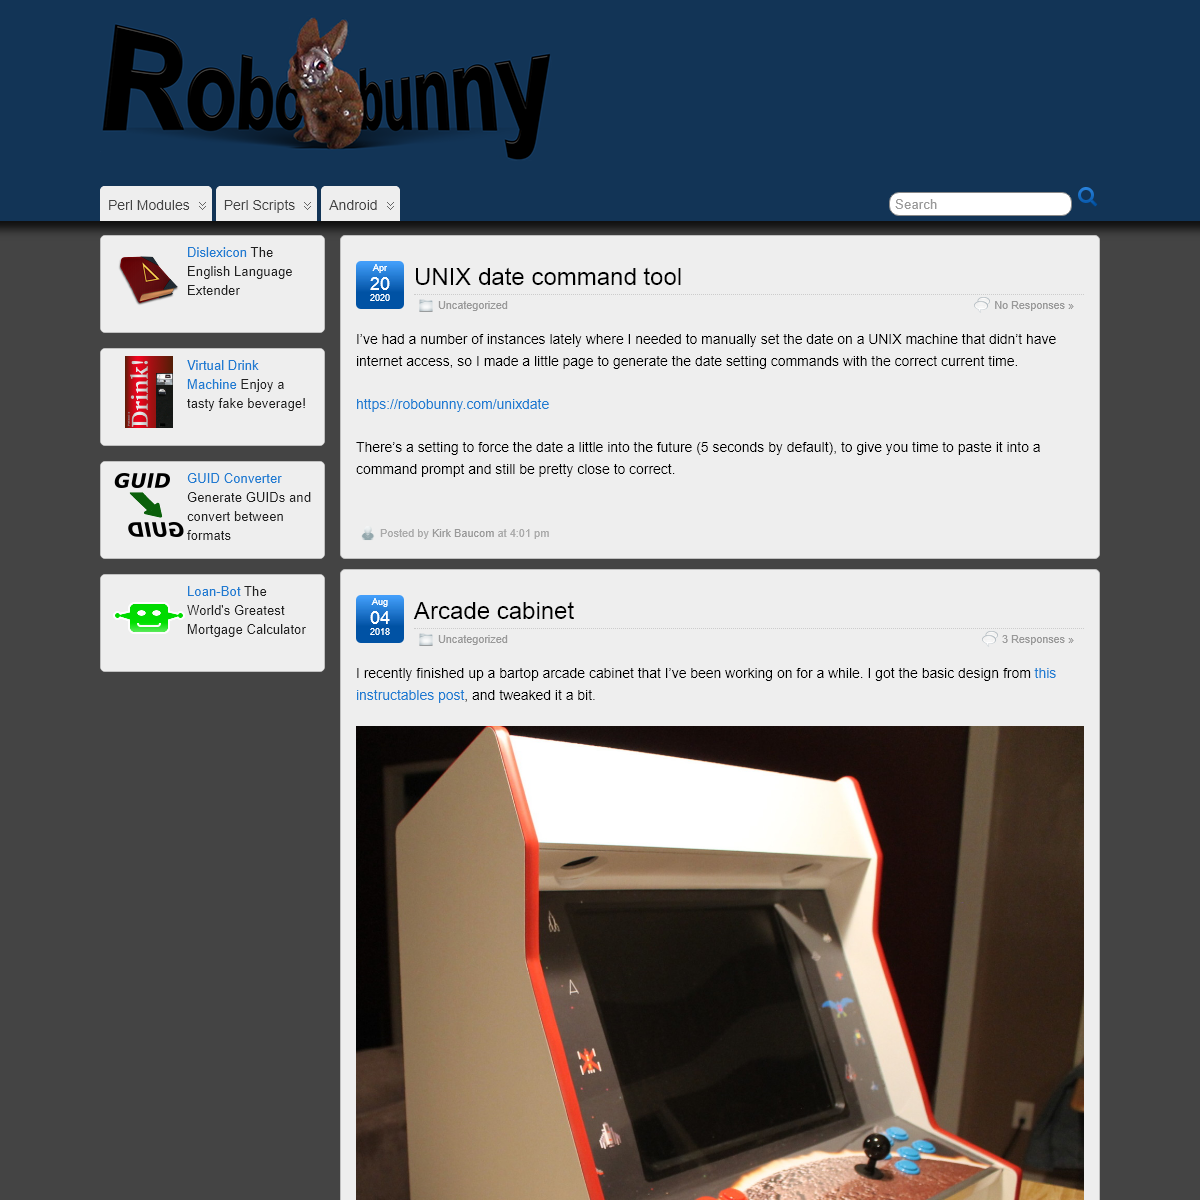 A complete backup of robobunny.com